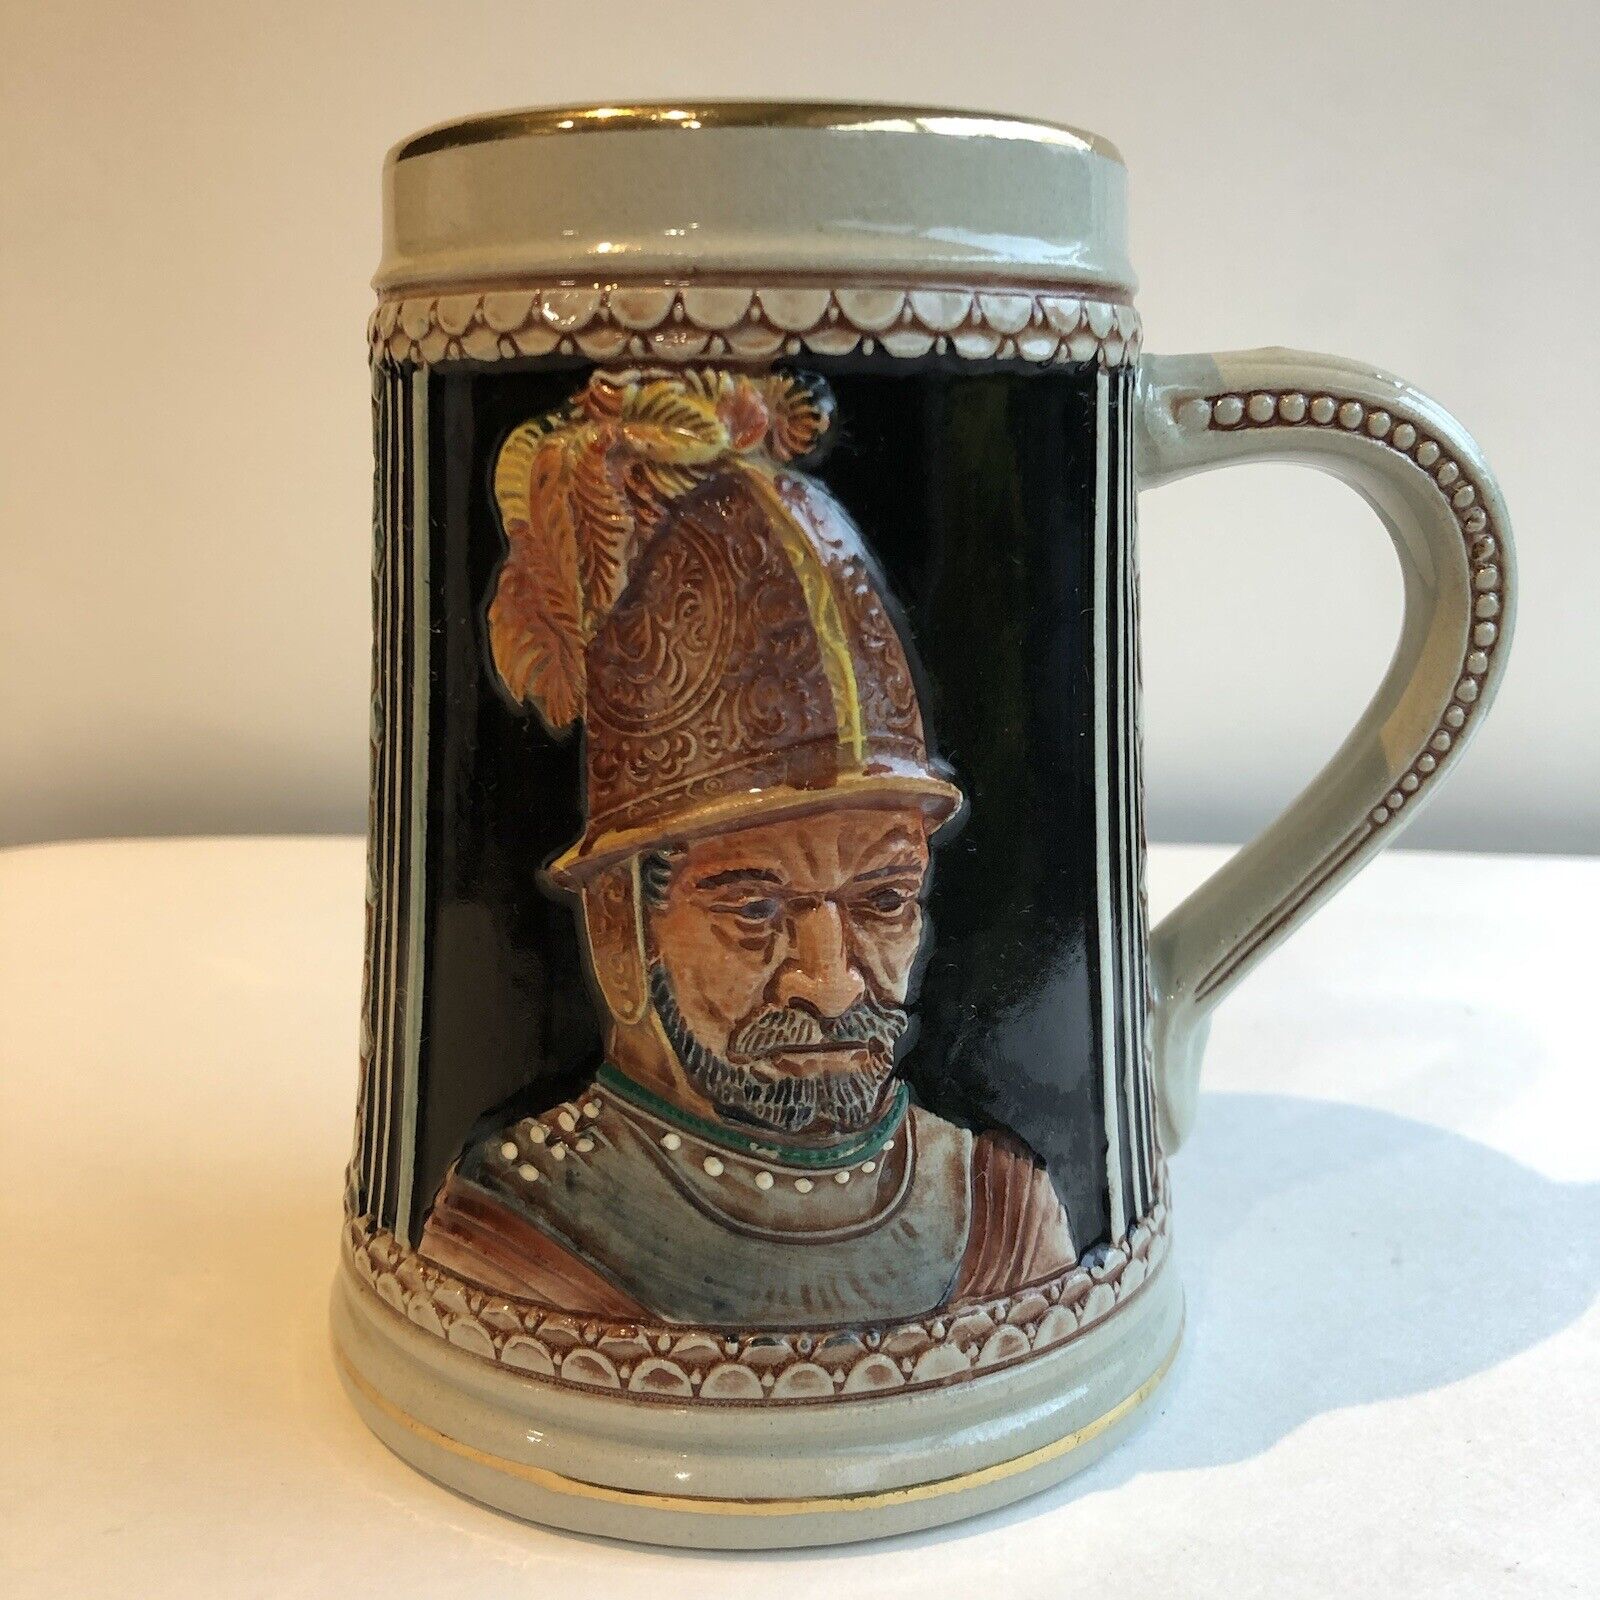 Vintage Germany Gerz Handgemalt Medievil Knight Soldier Beer Stein No Lid